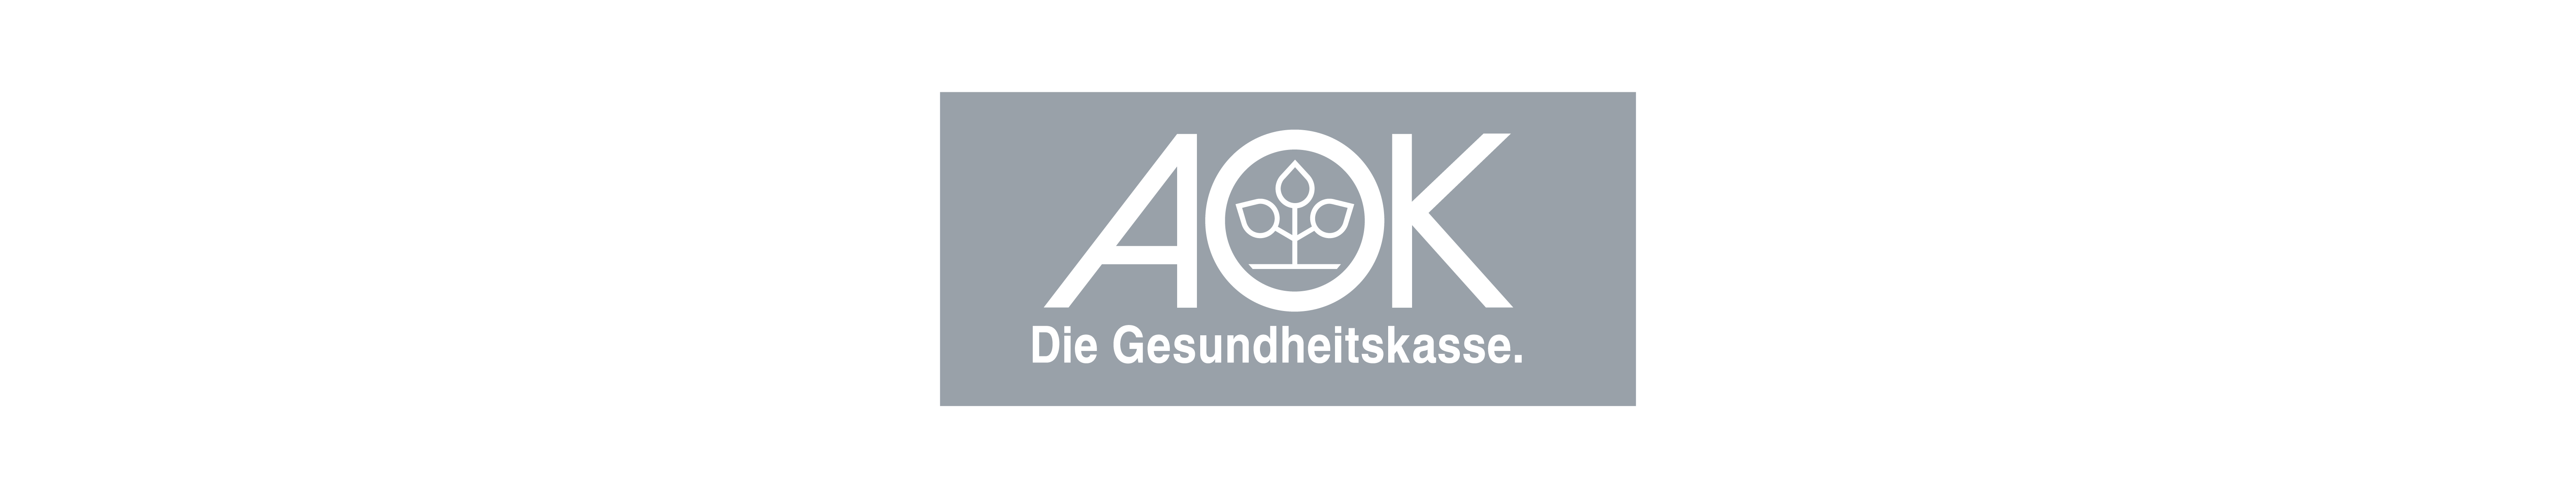 200630 AOK Cases Logos